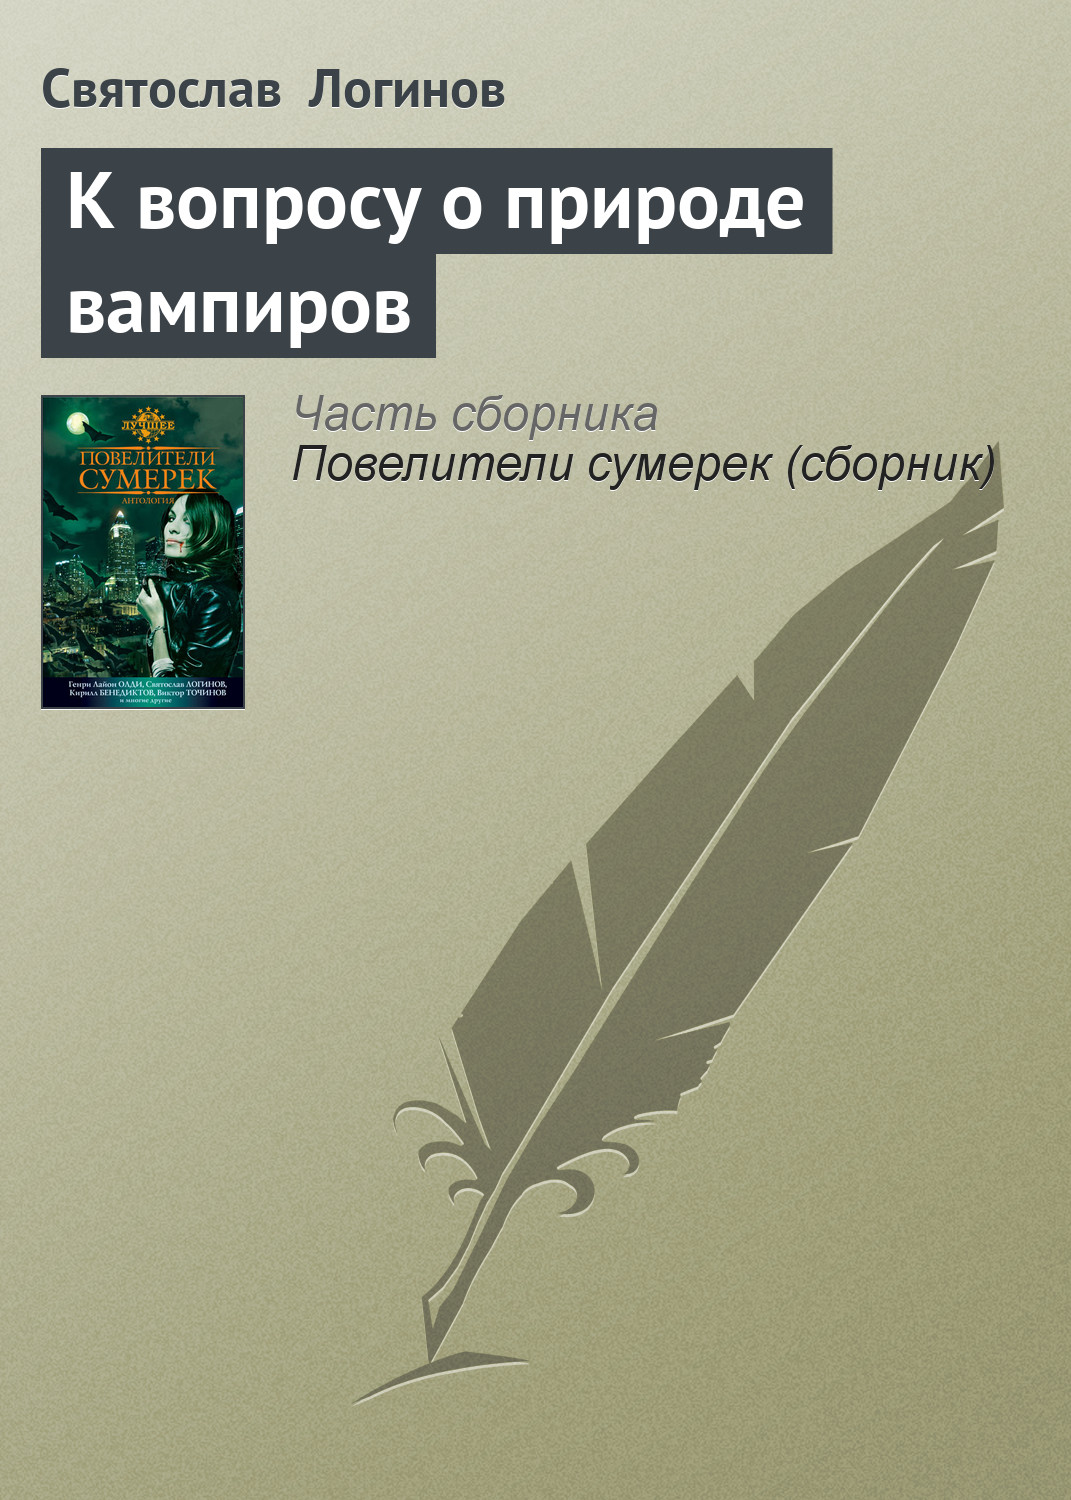 Святослав Логинов «К вопросу о природе вампиров»